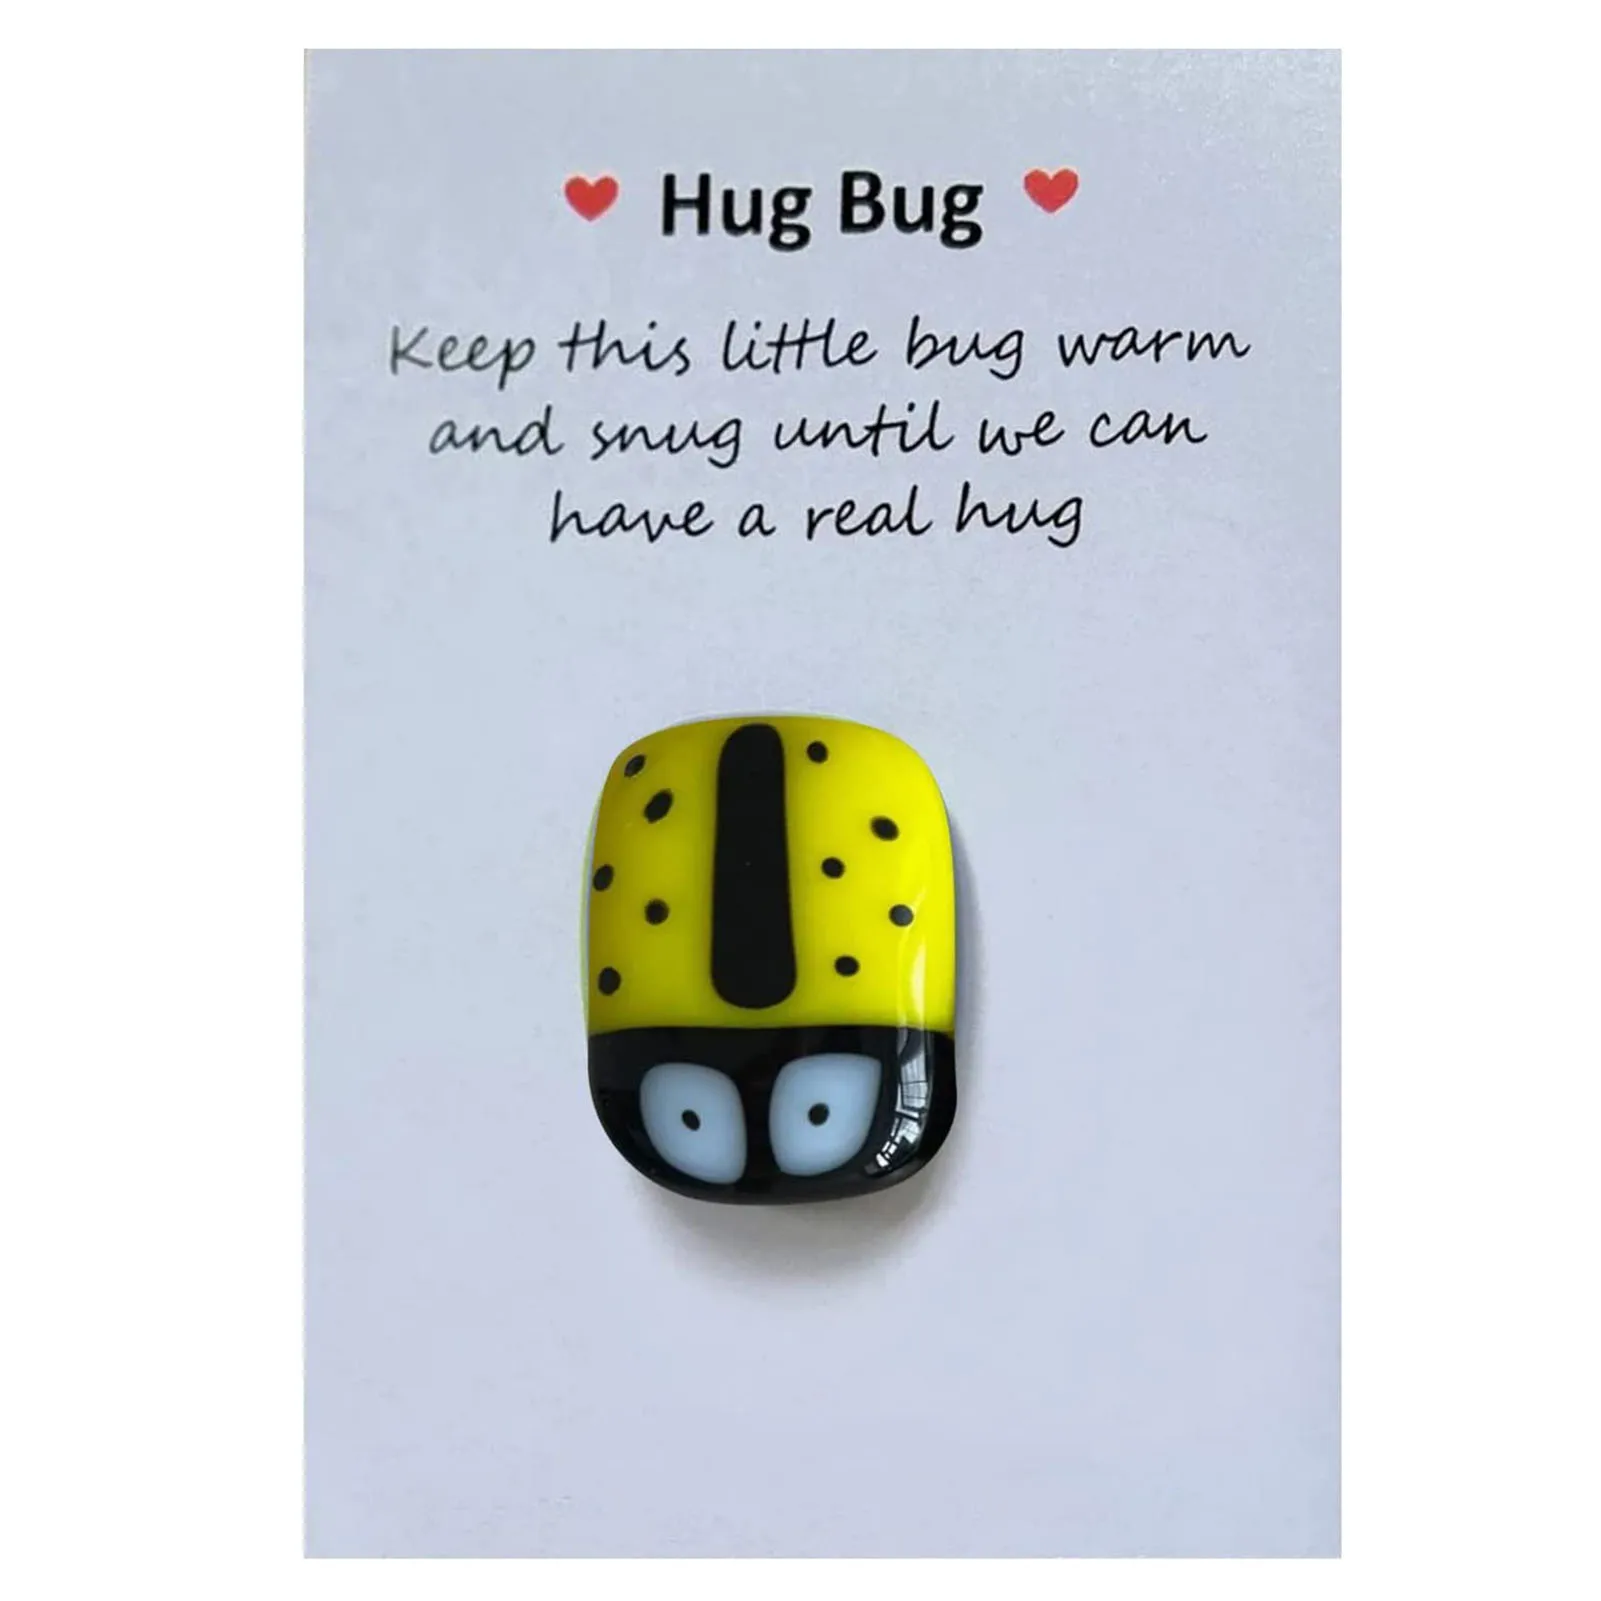 

Little Pocket Cute Animal Hug Bring Joy Wide Application Interesting Penguin Gift Decoration SP99